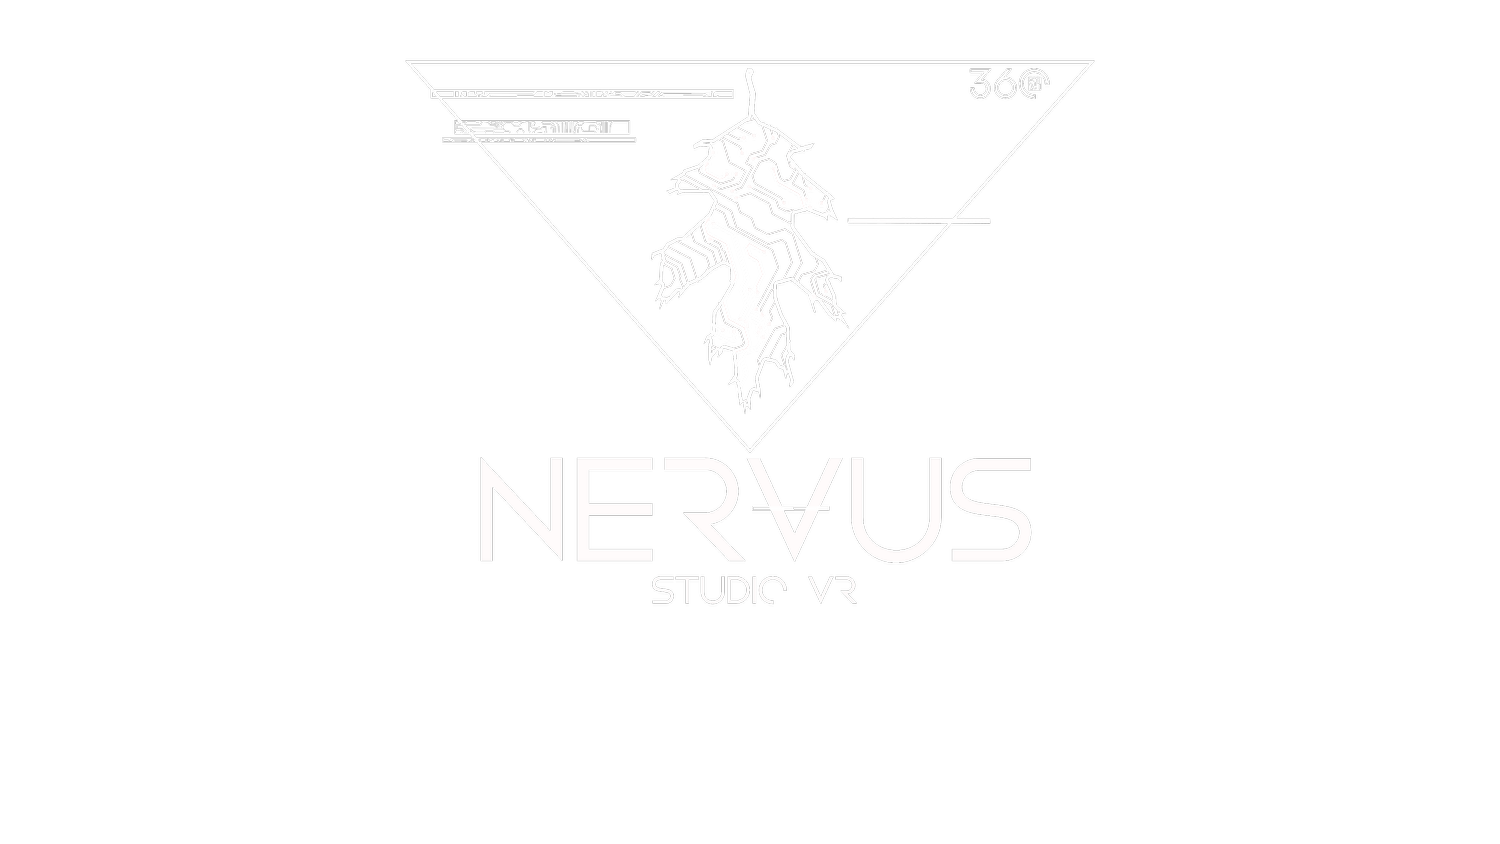 Nervus Co. Virtual Reality